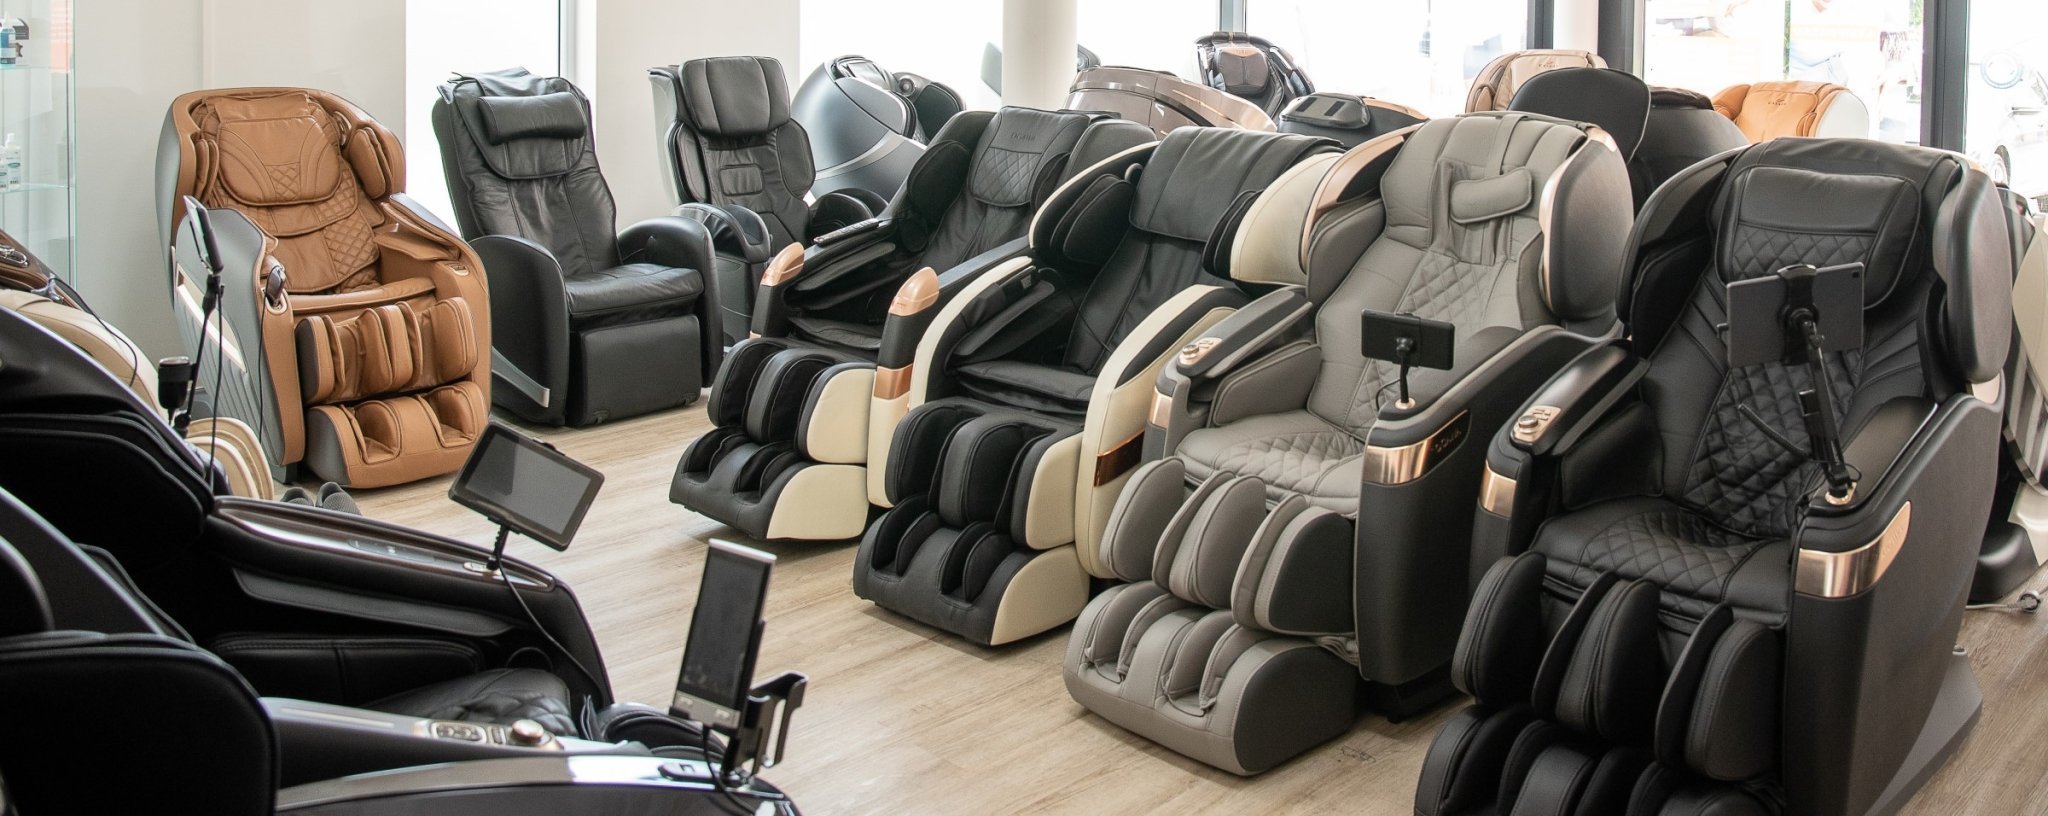 Izložbe masažnih stolica - Svijet masažnih stolica